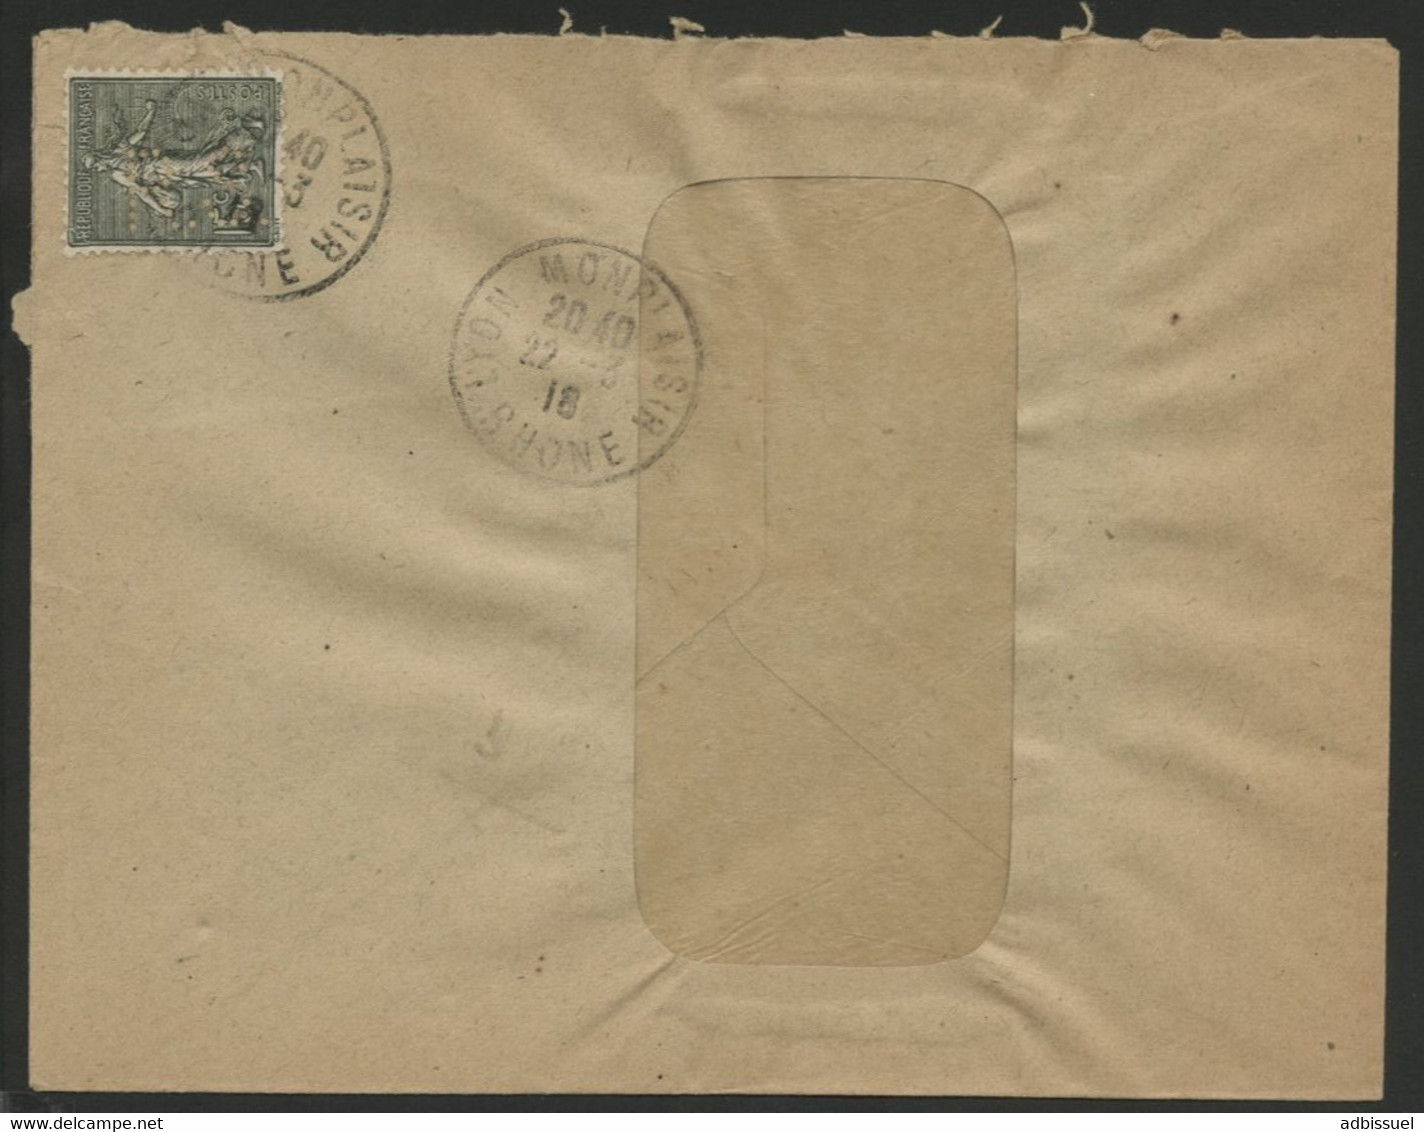 ROCHET SCHNEIDER LYON N° 130 Perforé R.S De Lyon En 1918. Au Verso L'adresse Imprimée 57-59 CHEMIN FEUILLAT LYON - Lettres & Documents